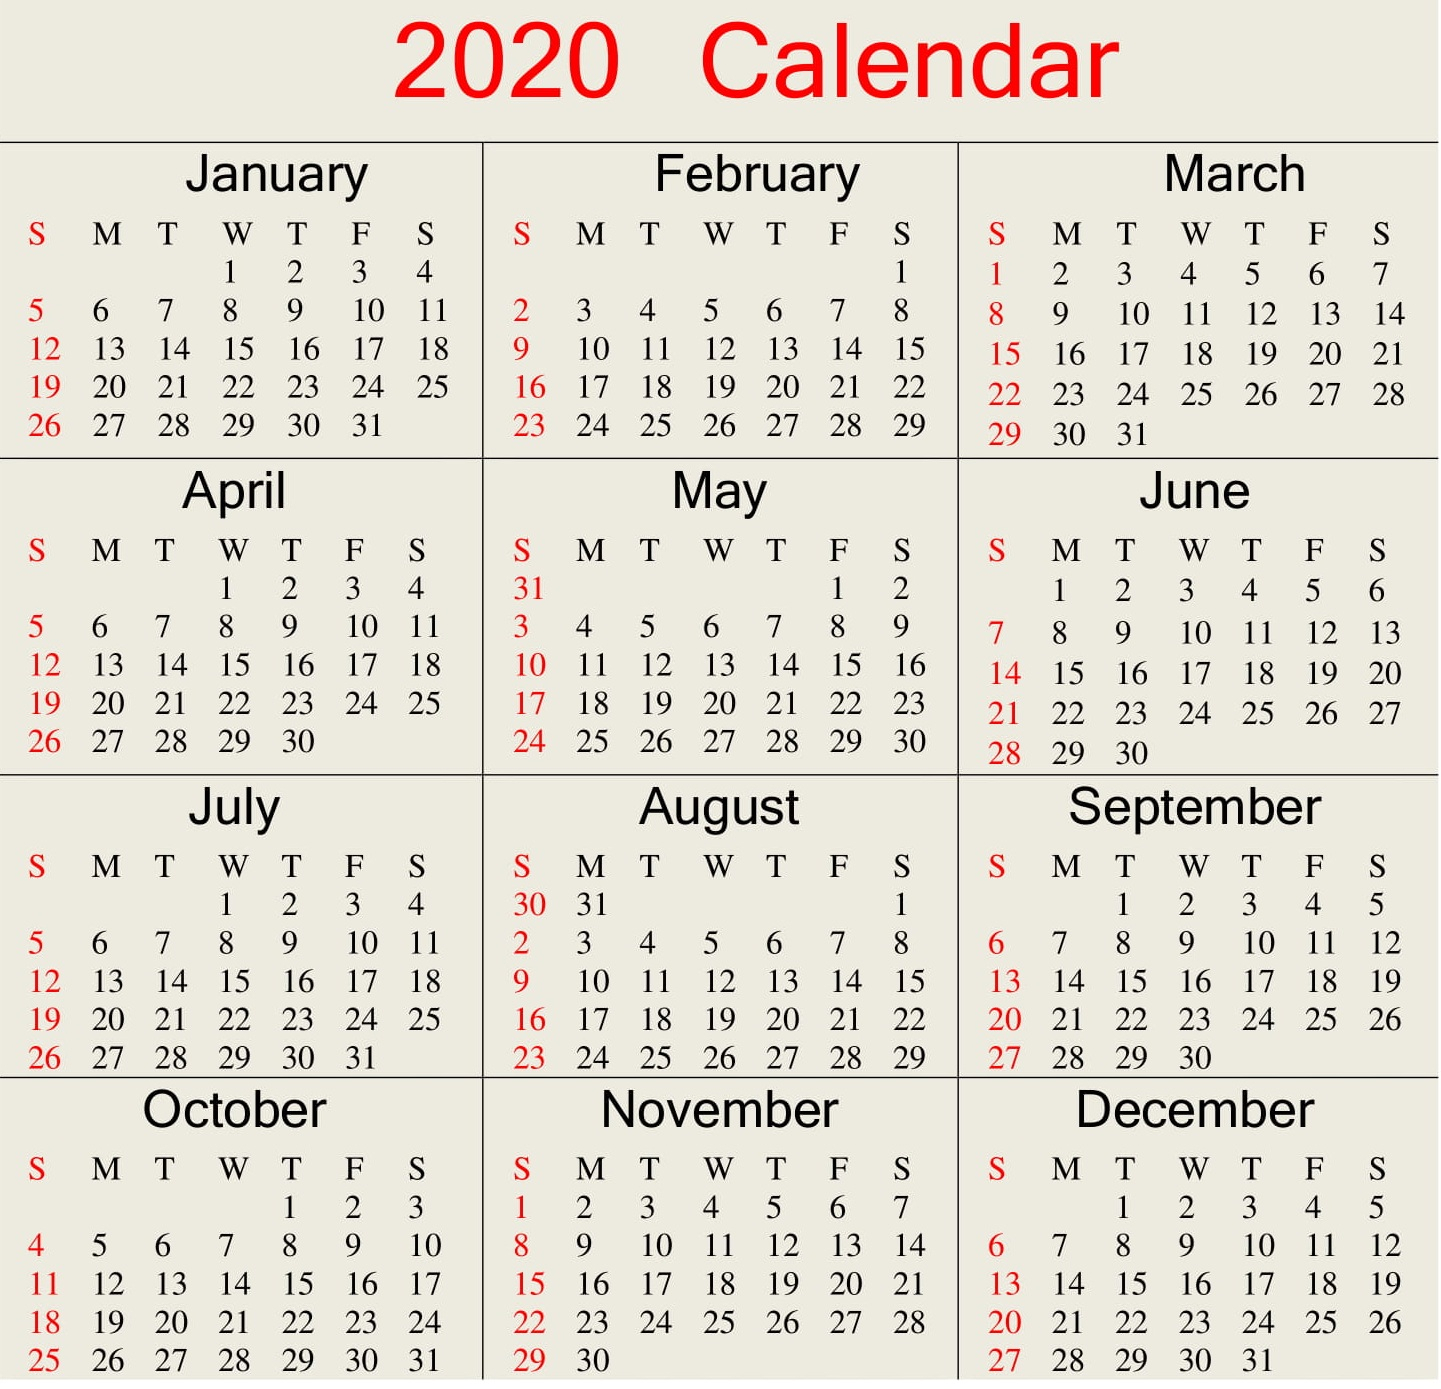 Catch Julian Calendar For November And December 2020 regarding Quadax 2021 Julian Calendar